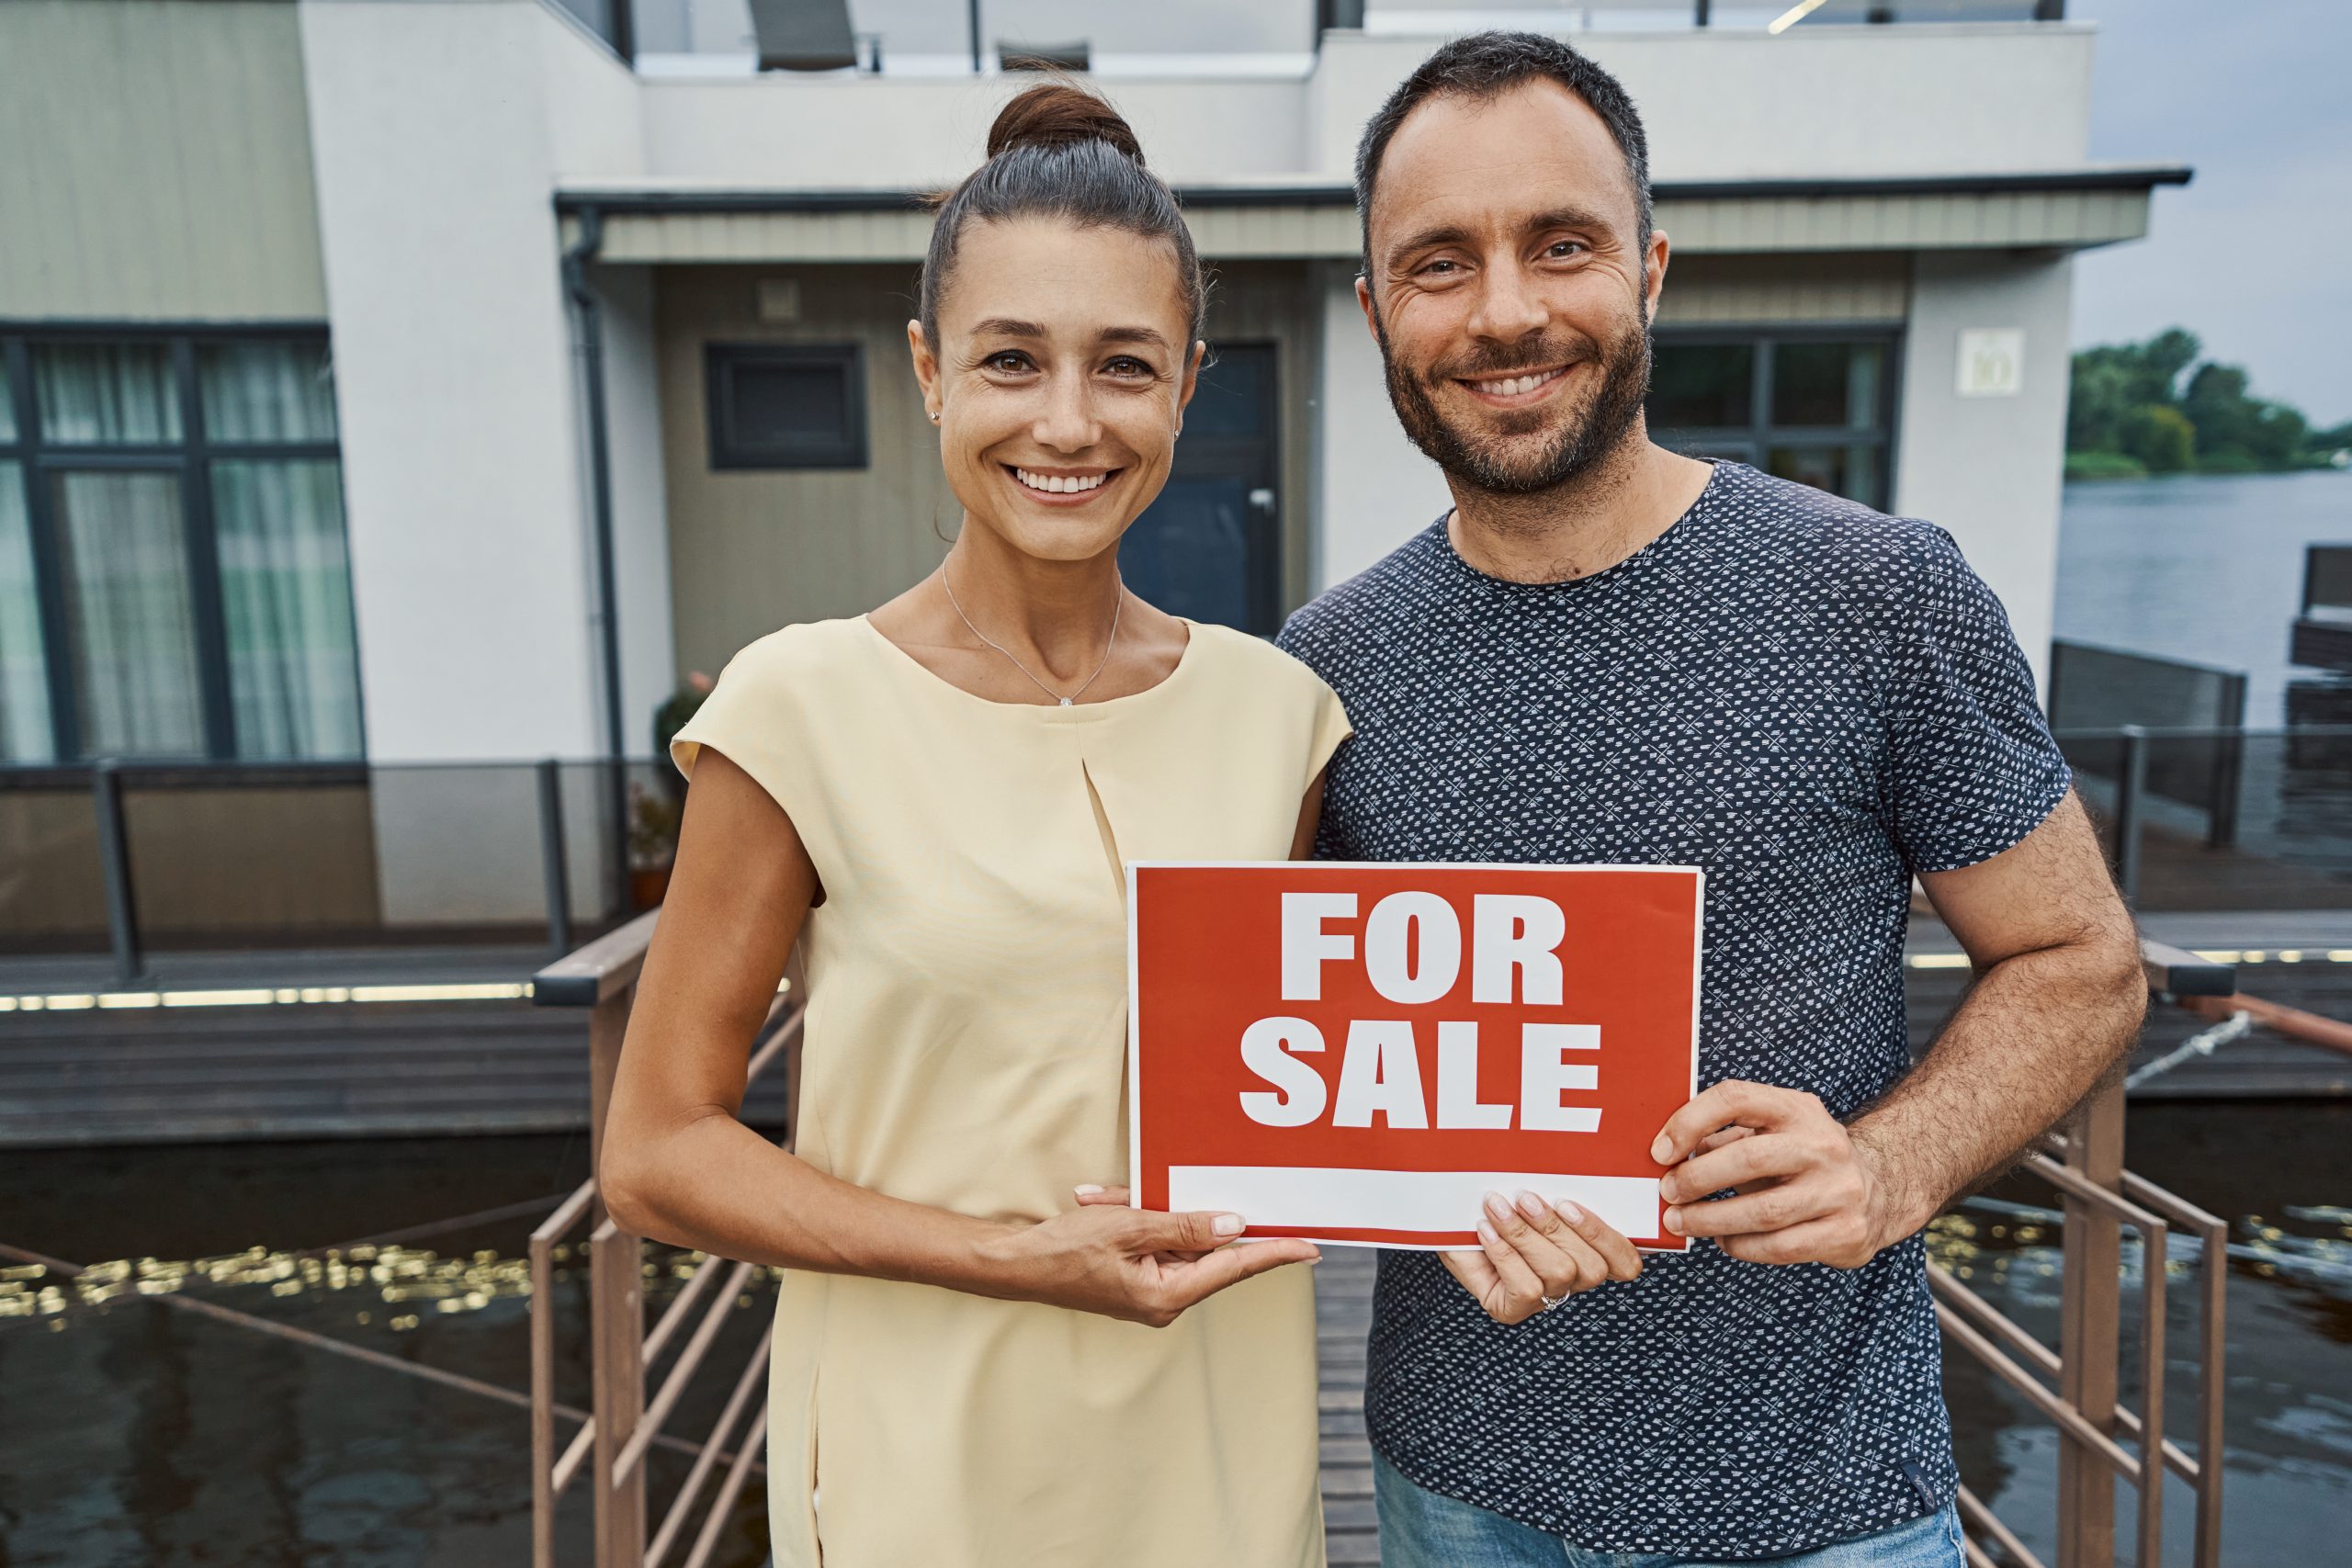 vendere casa consigli